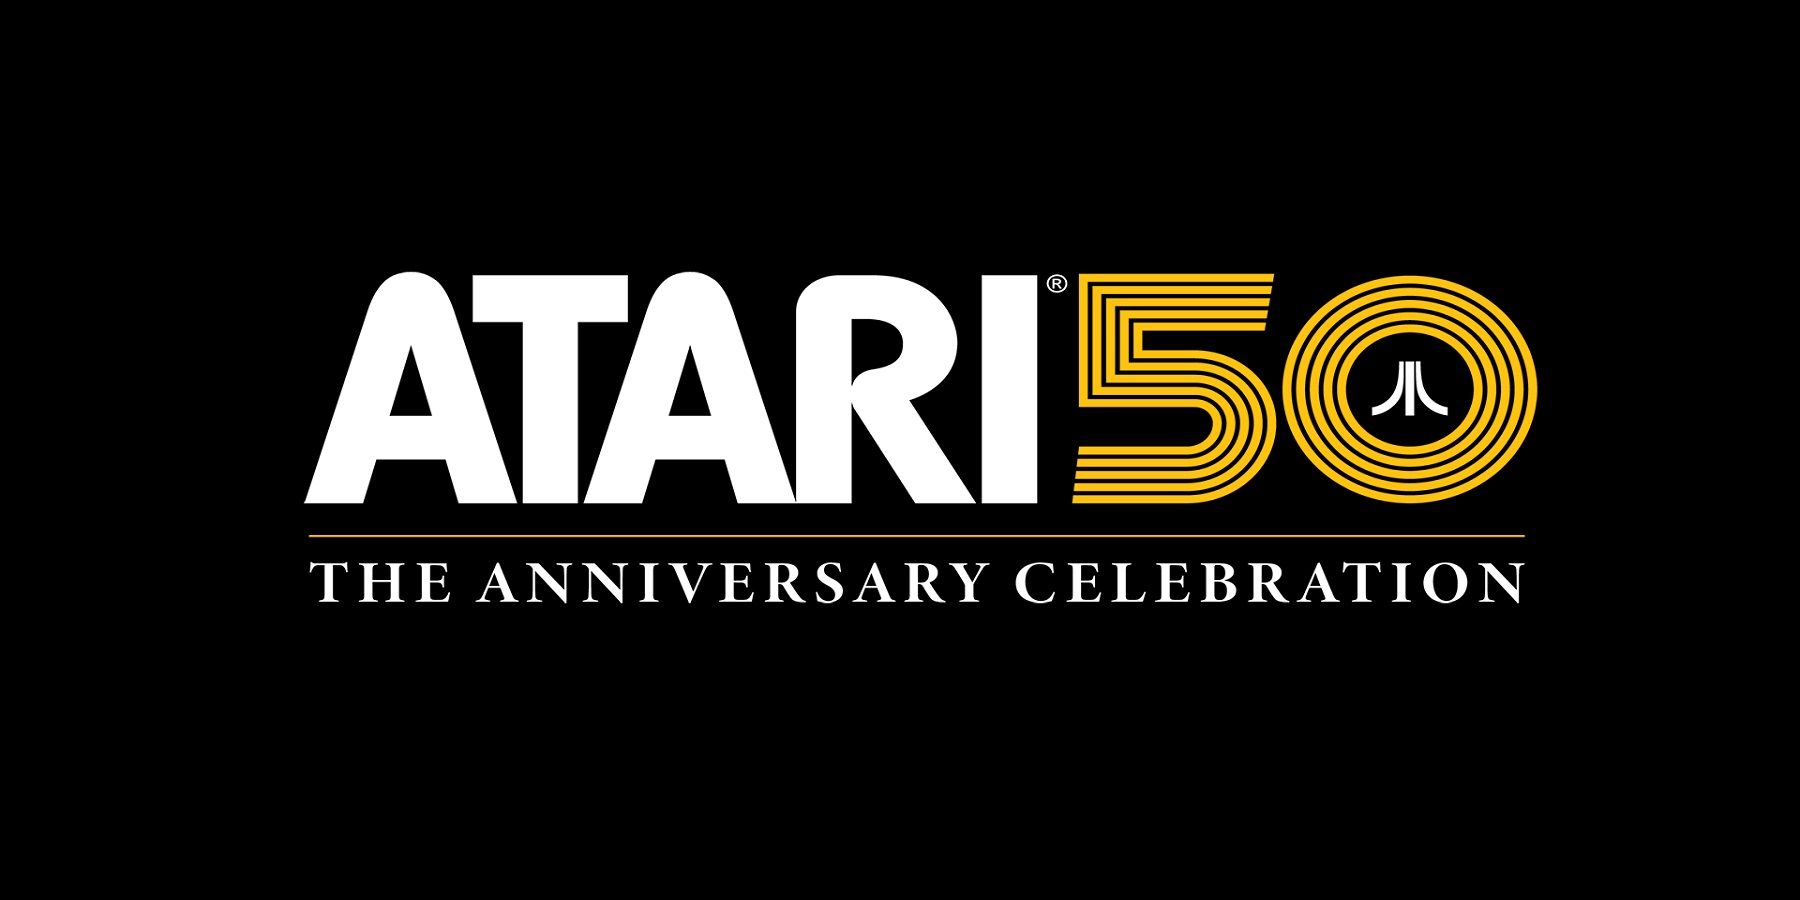 Atari 50 Logo1